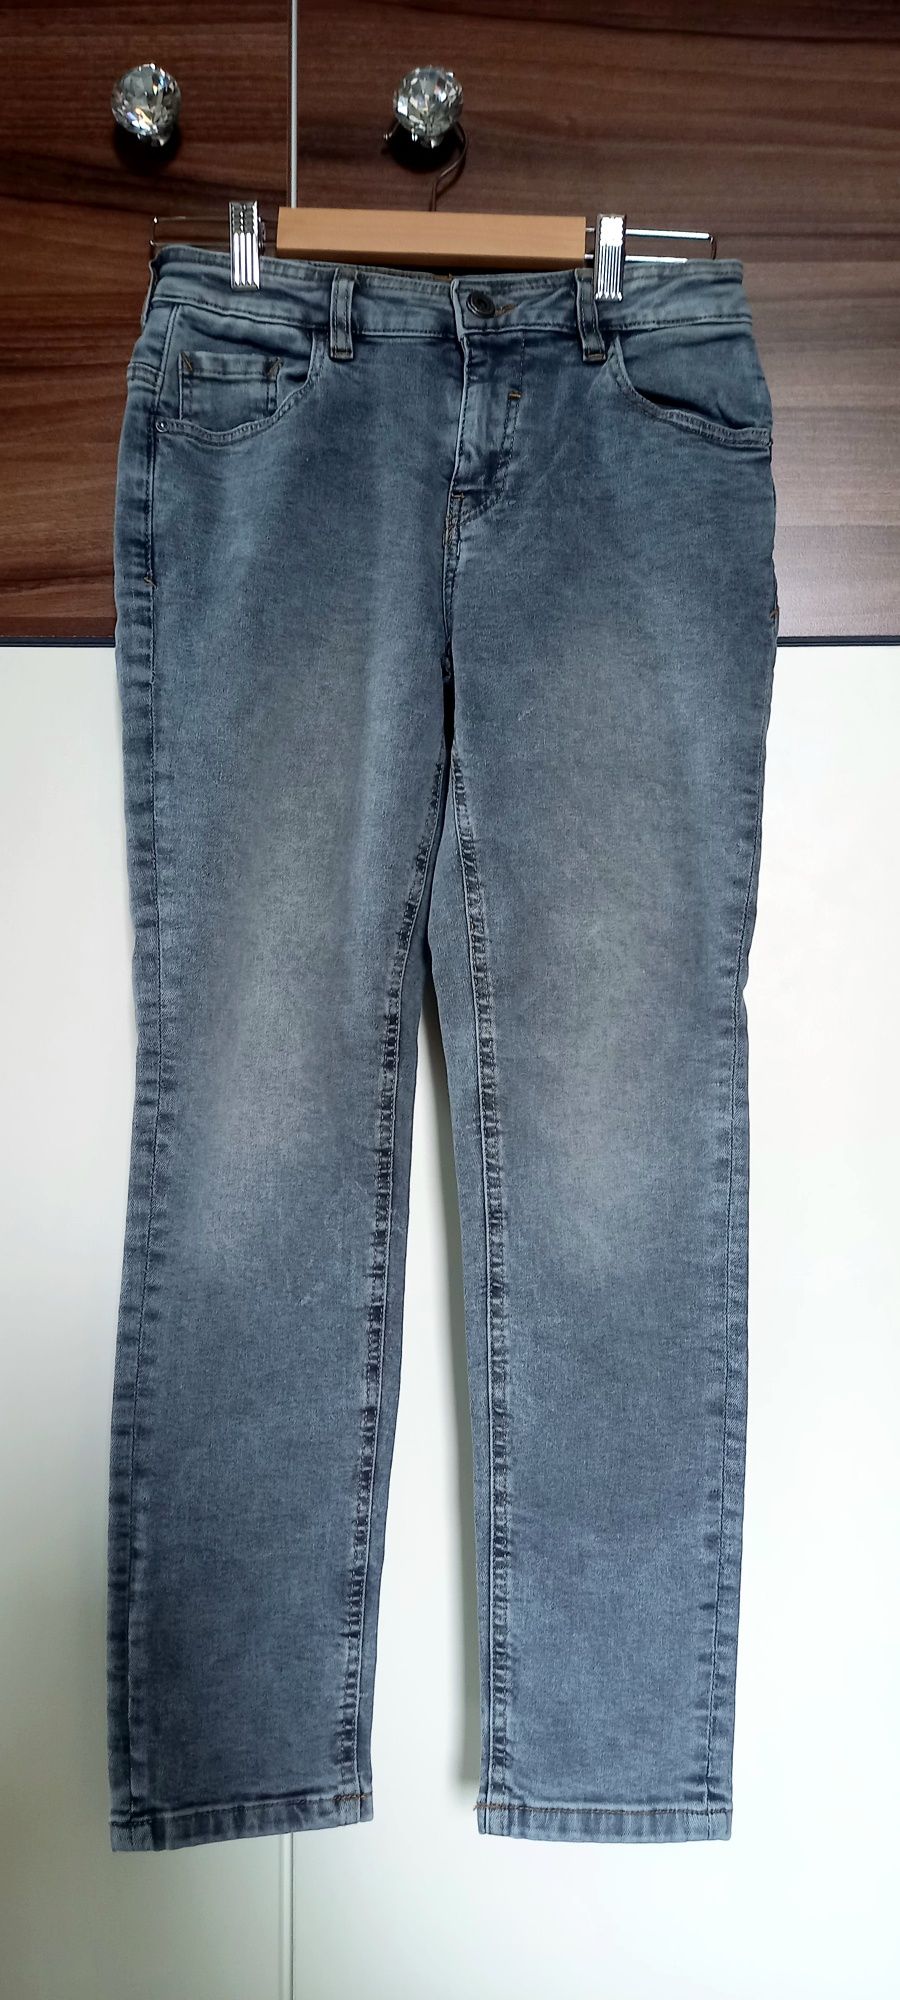 Reserved, spodnie jeansowe dżinsy, roz. 152cm